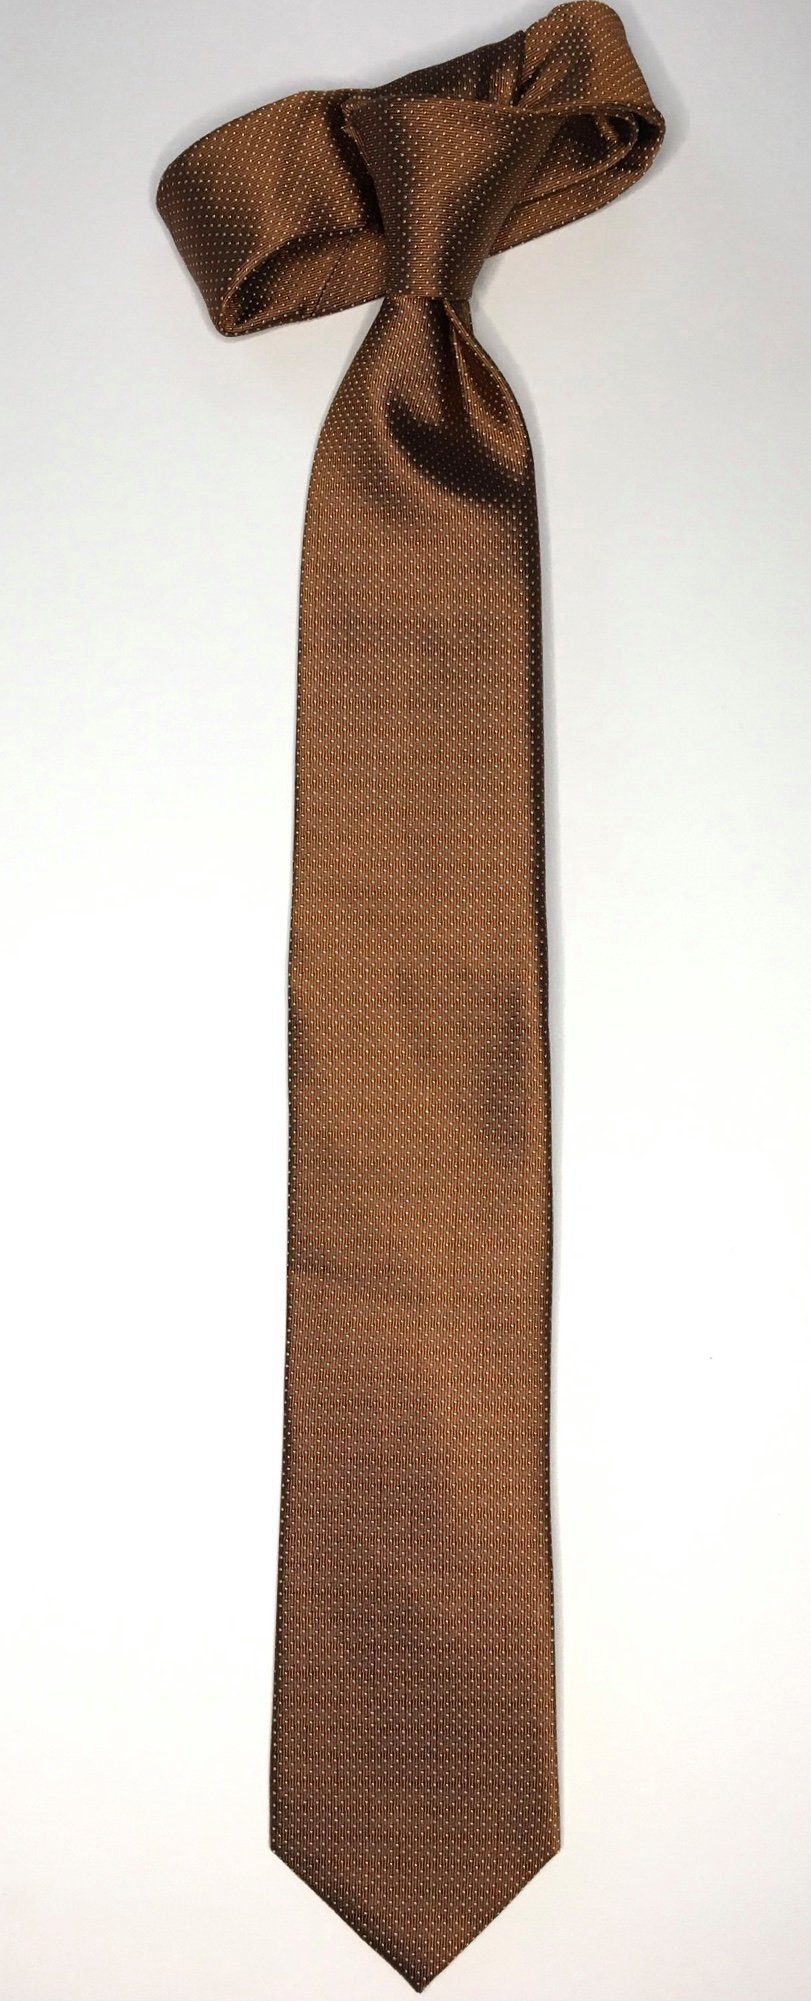 Design Krawatte im Picoté Krawatte Krawatte Cognac 6cm Picoté Seidenfalter Seidenfalter Seidenfalter edlen